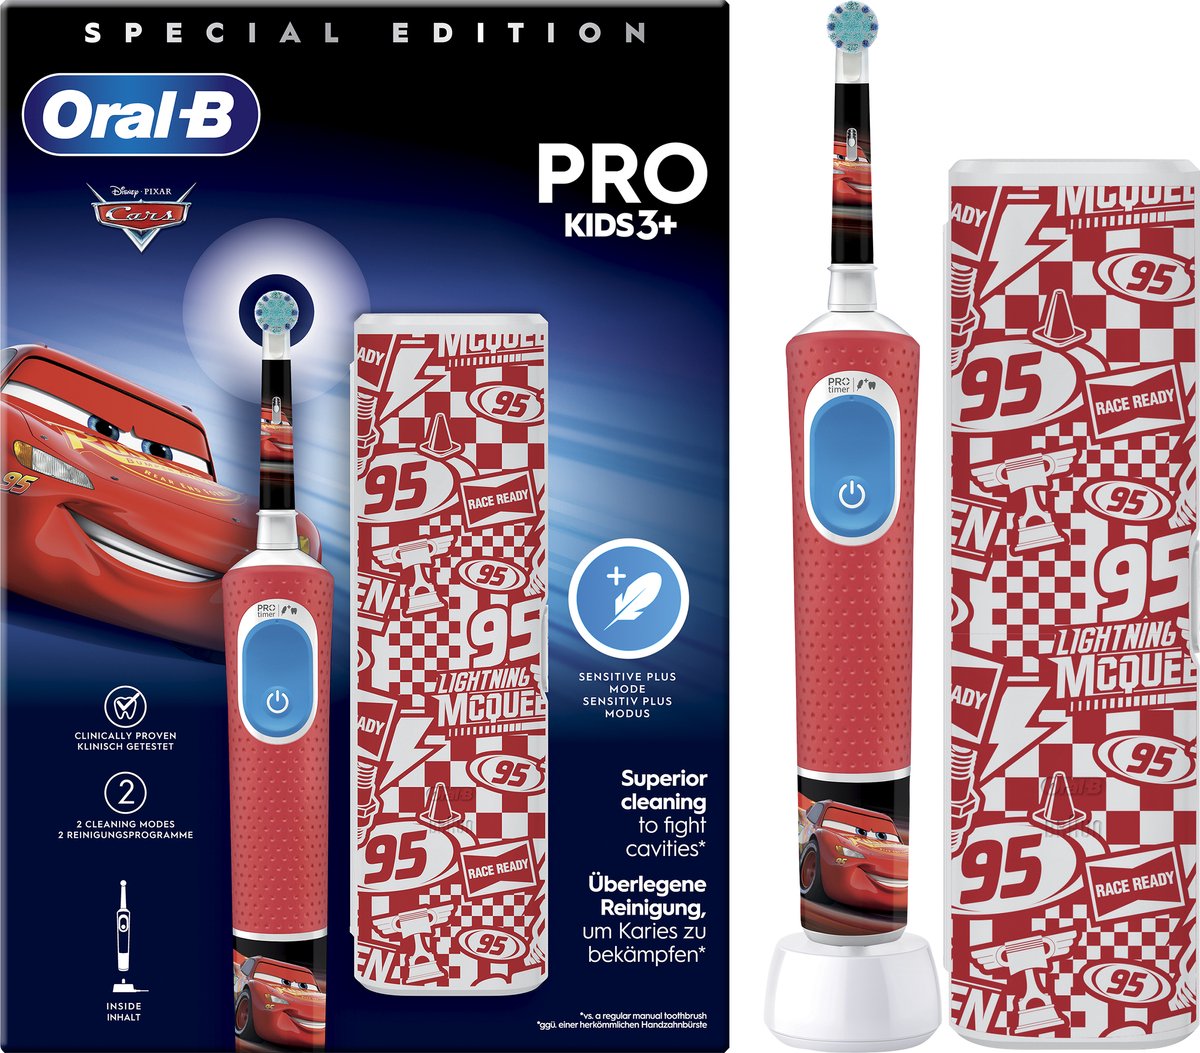 Oral-B Pro Kids - Cars - Elektrische Tandenborstel - Ontworpen Door Braun - Oral B